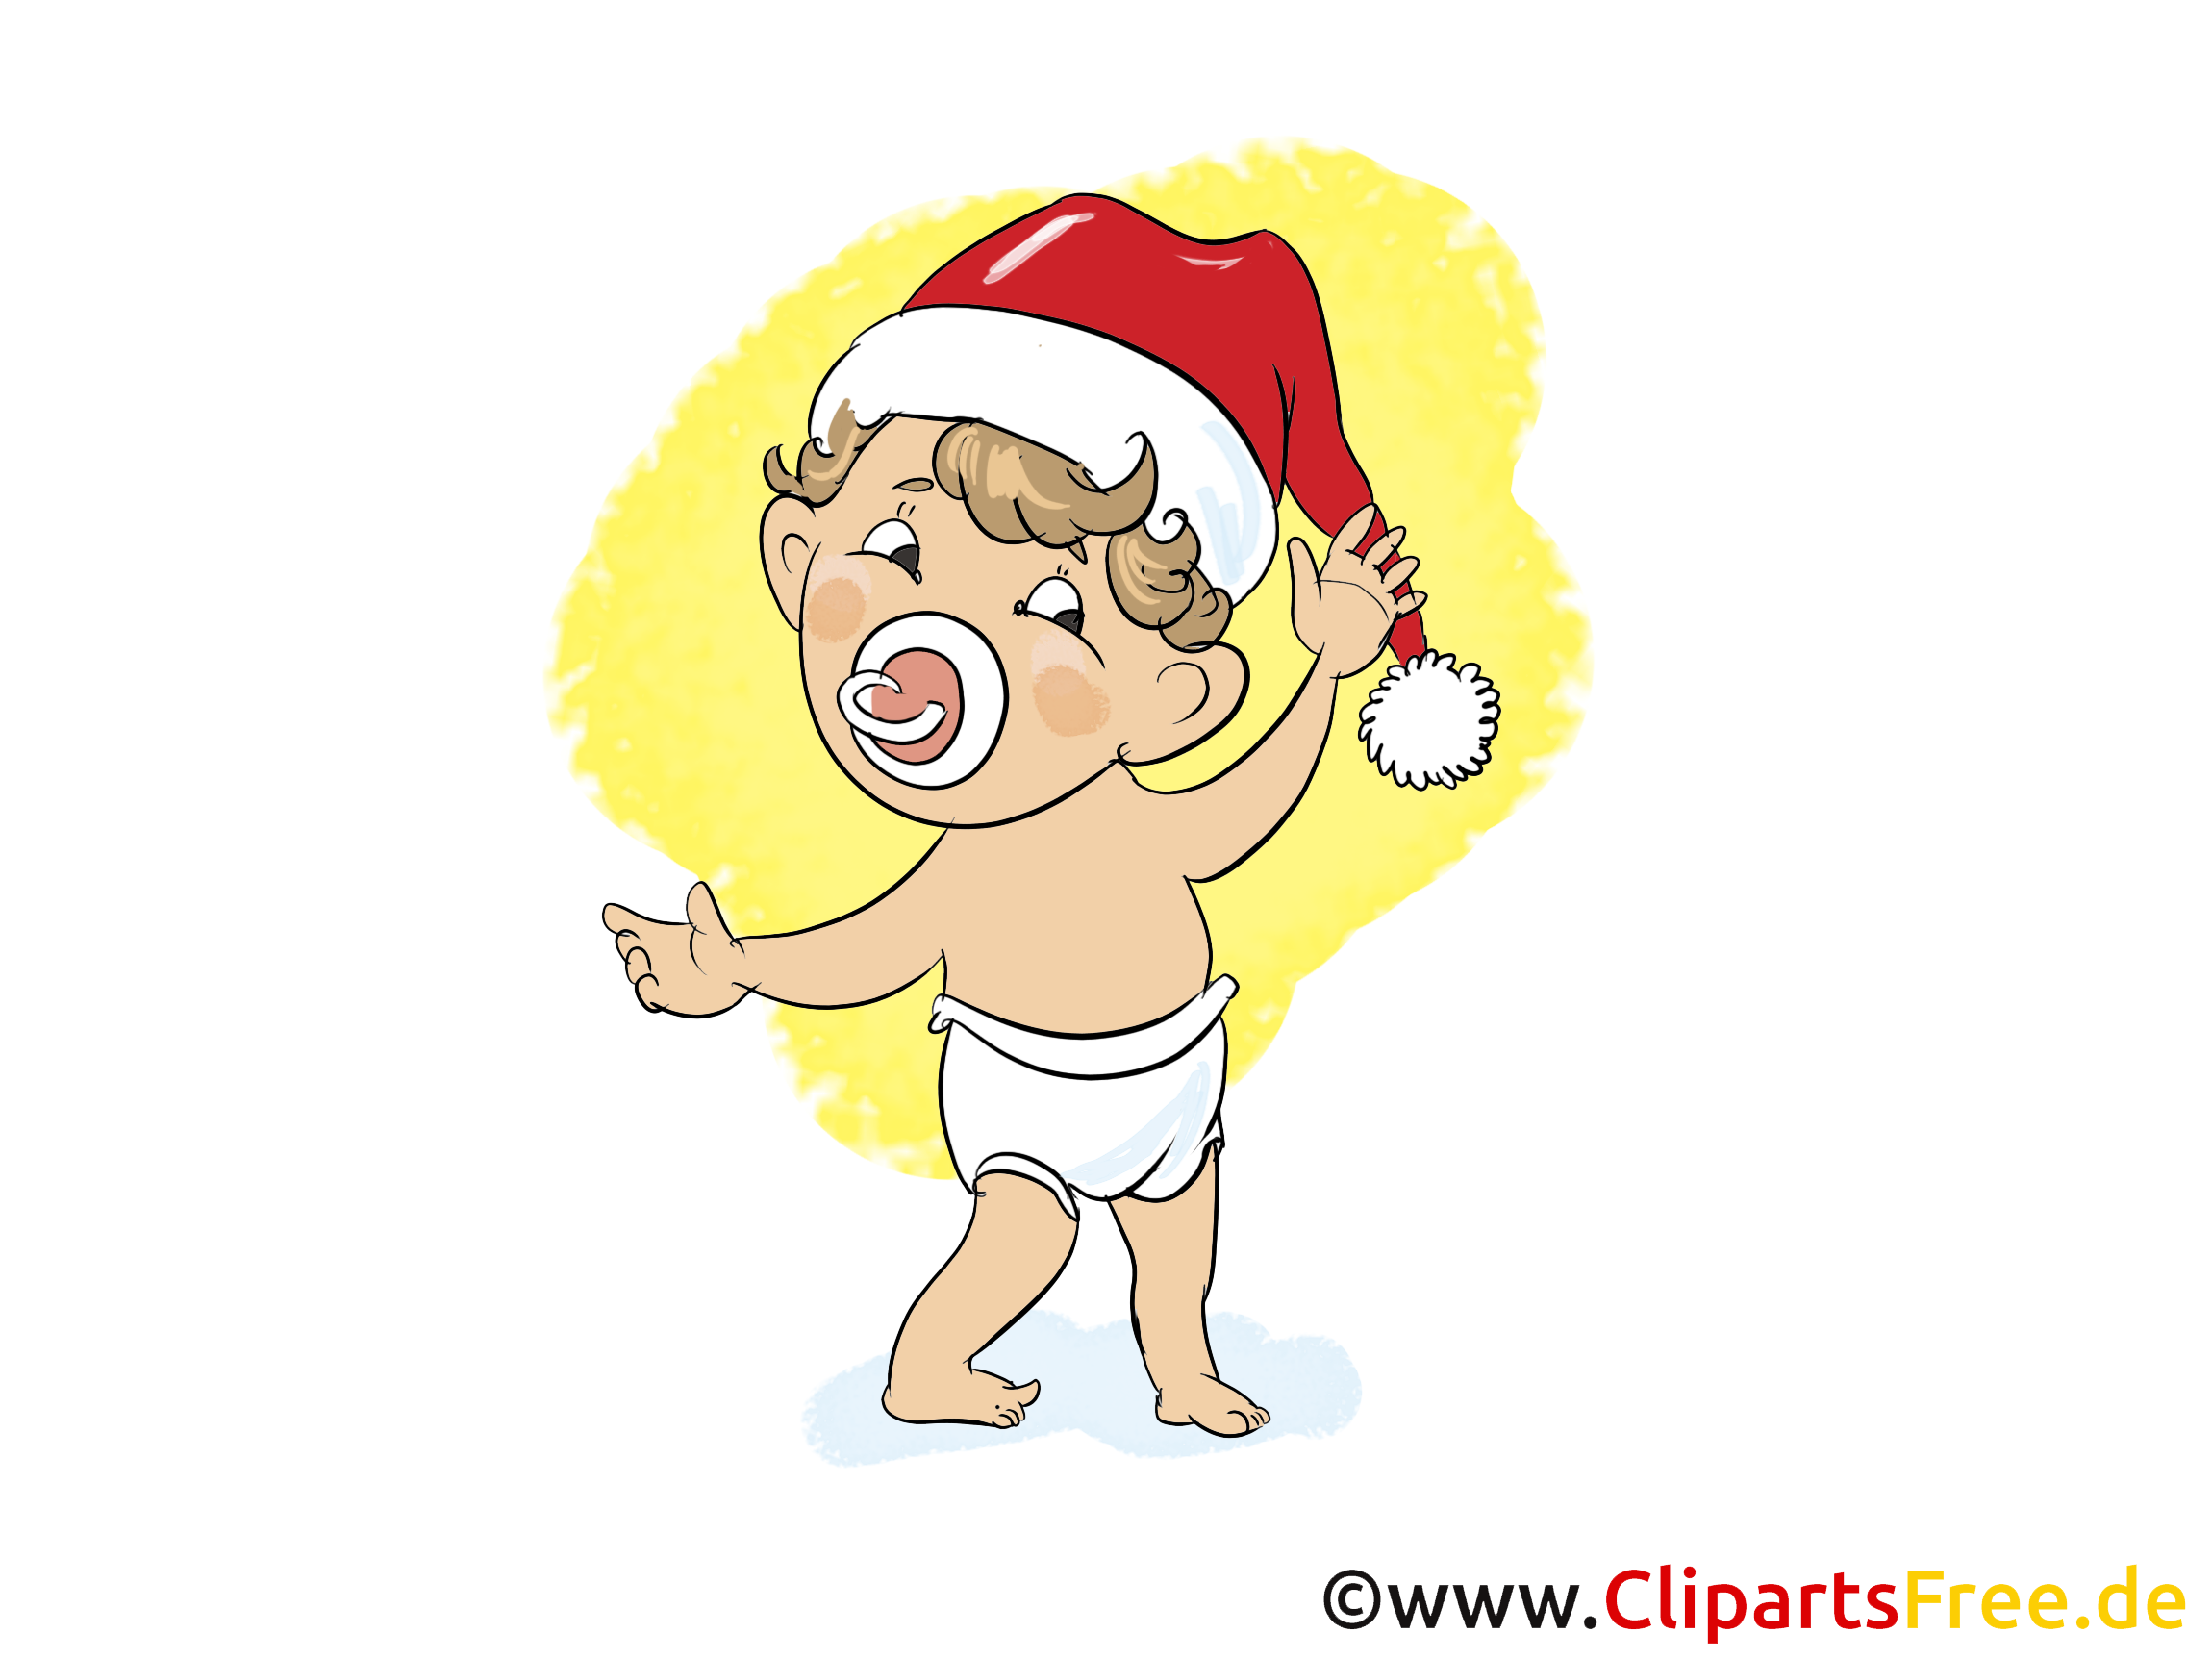 cliparts weihnachten kostenlos - photo #6